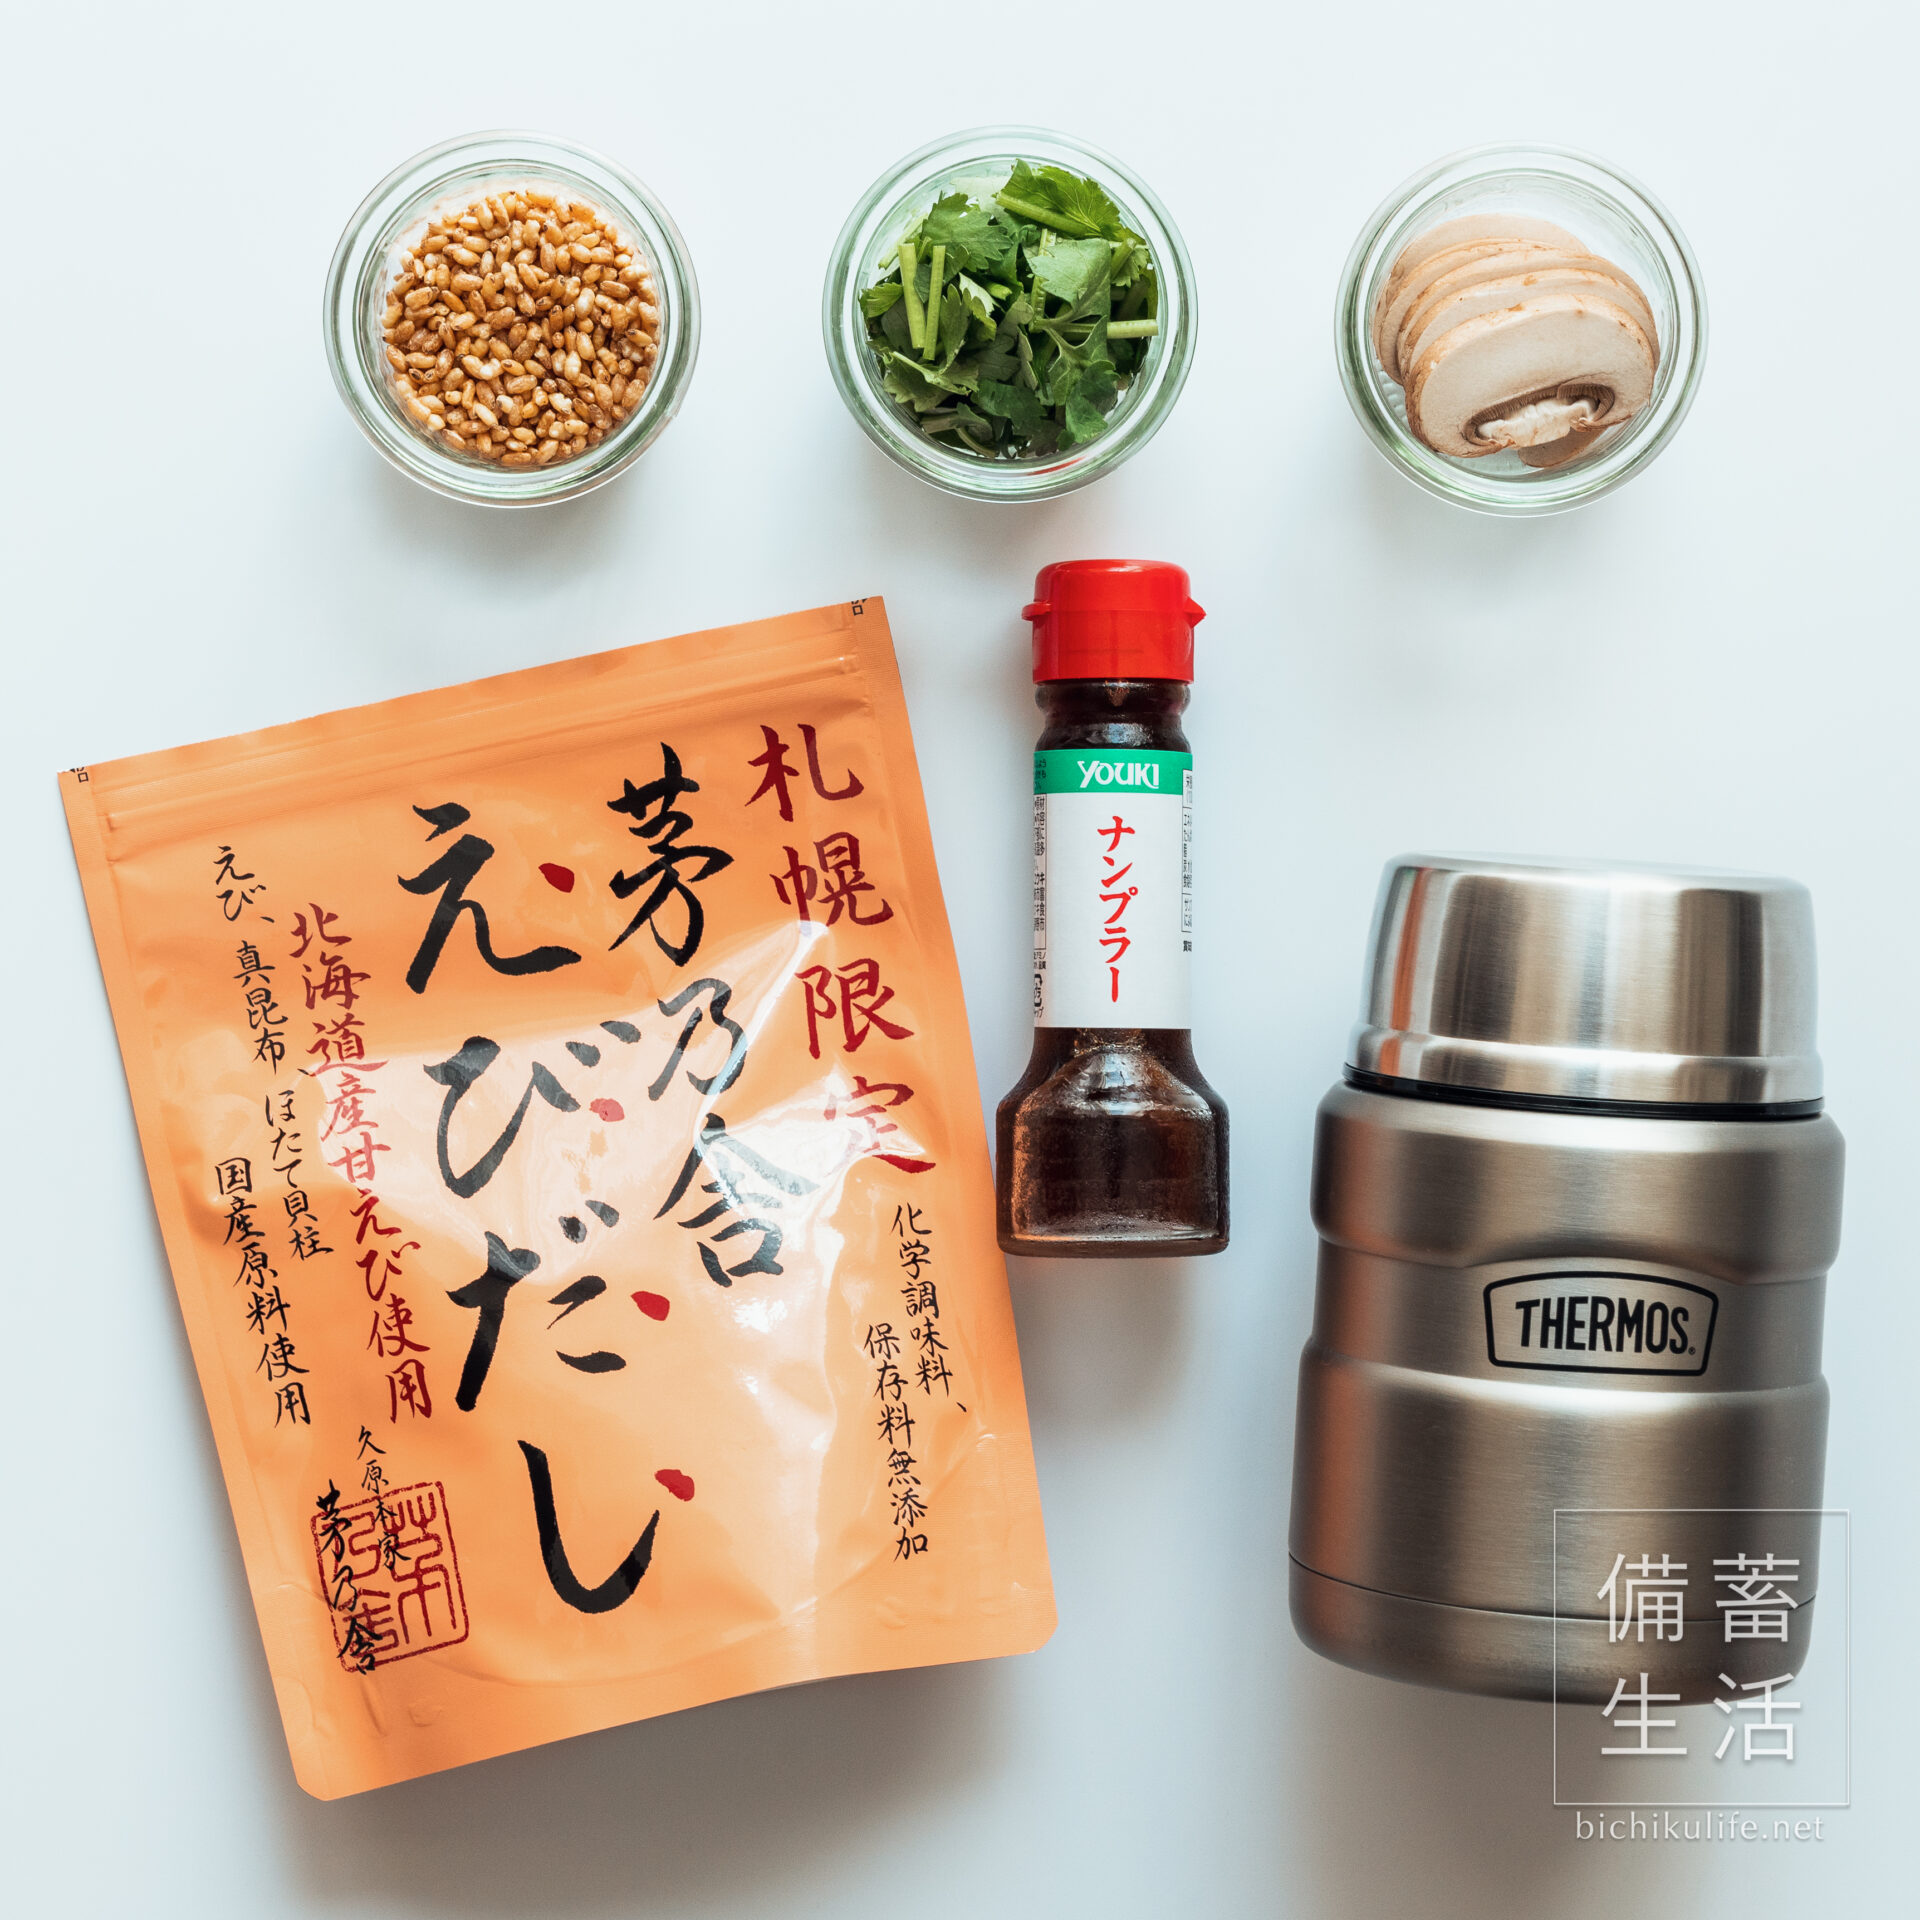 【タイ風】炒り玄米スープごはんの作り方・レシピ、材料